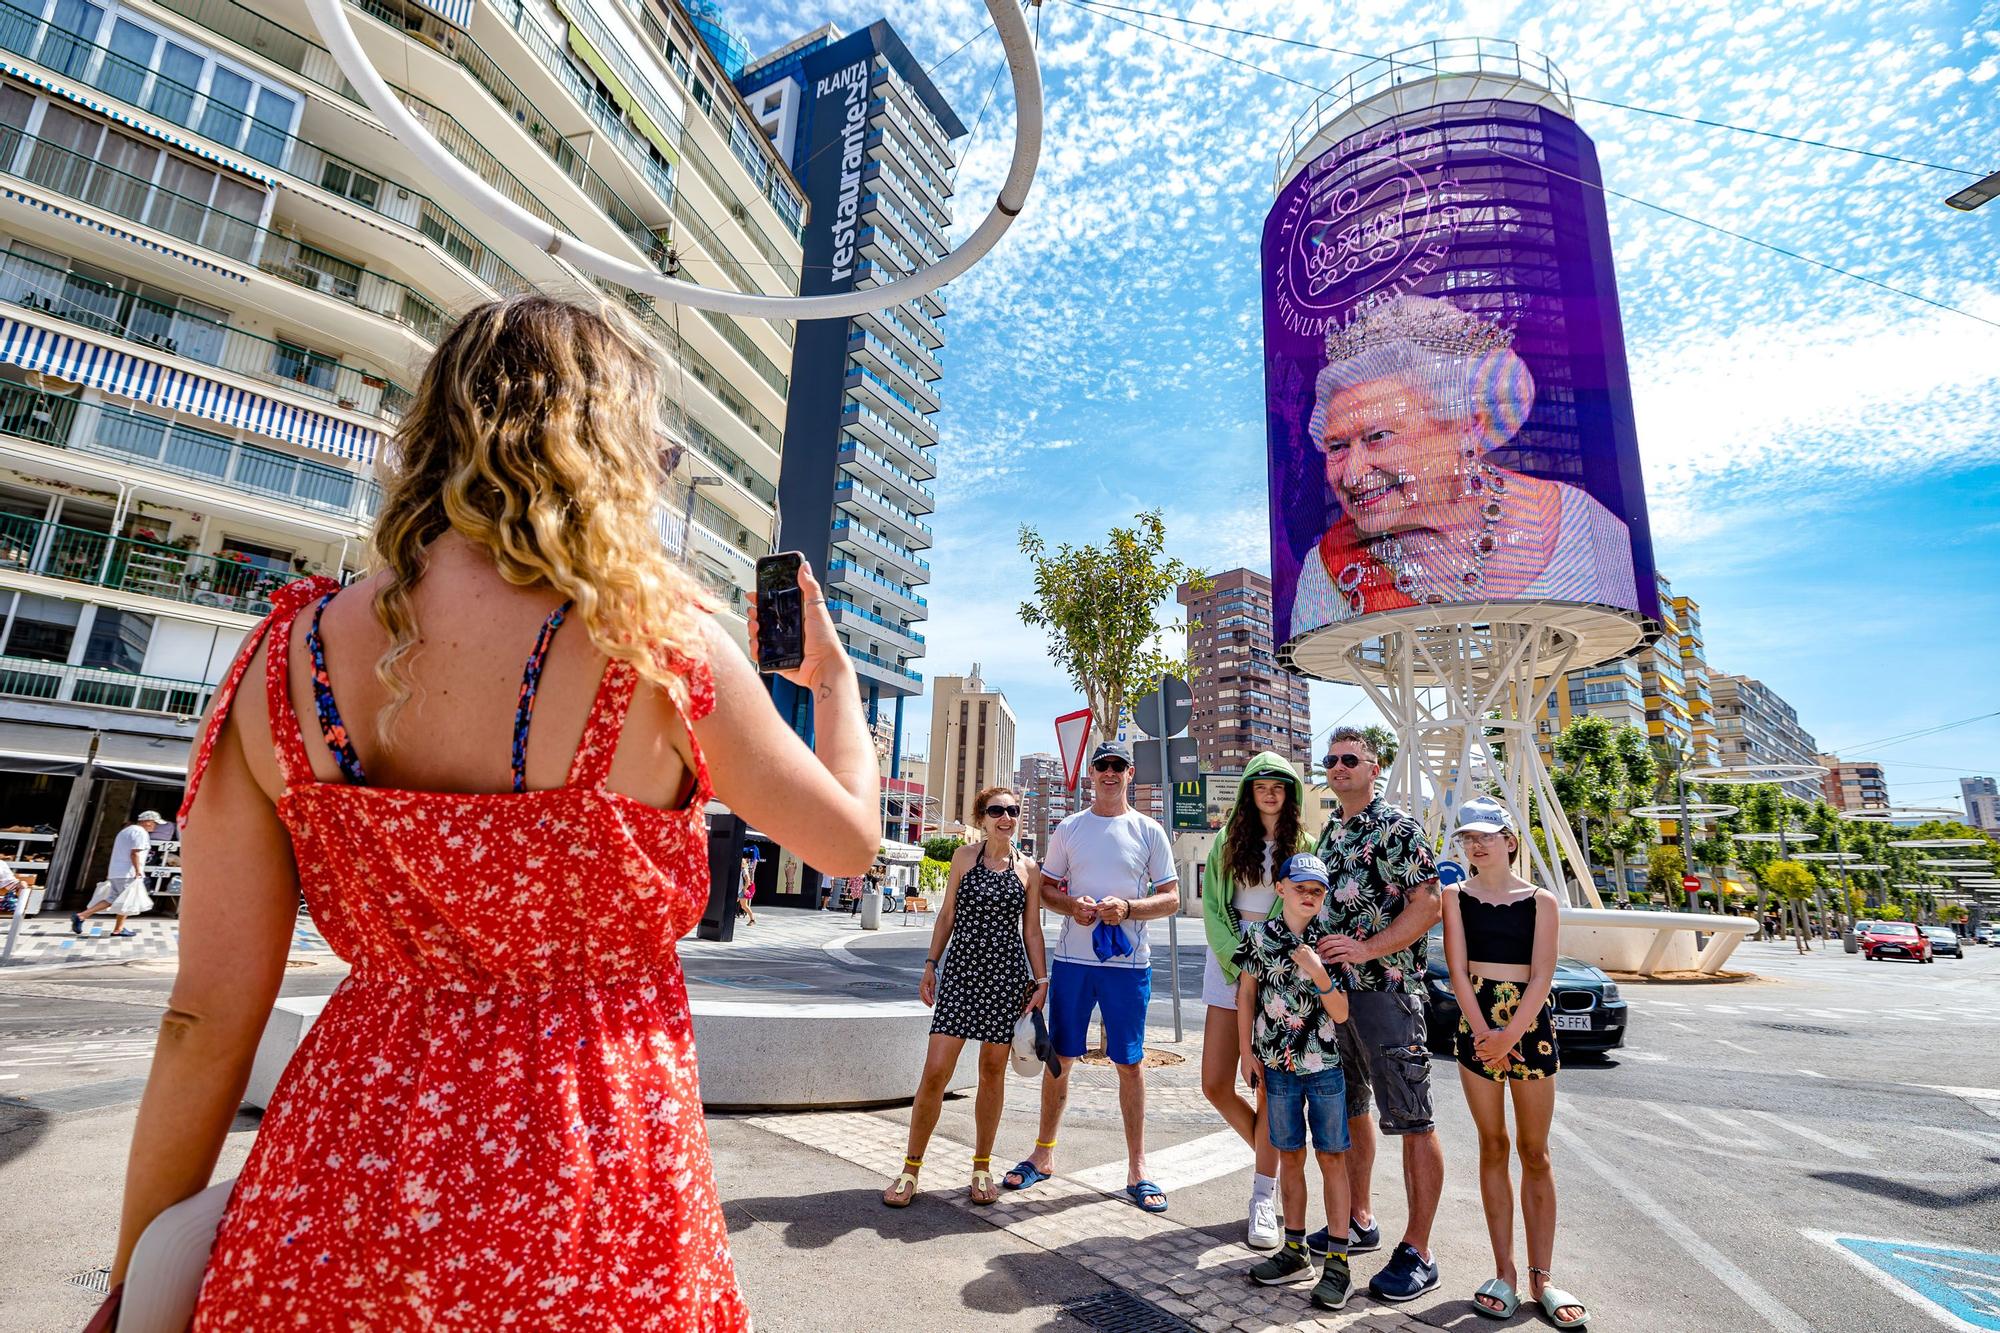 La capital turística celebra el Jubileo de Platino de la monarca inglesa con un vídeo en el que aparecen imágenes y un texto sobre la efeméride | Hosbec cifra en 15.000 británicos los que pasarán estos cuatro días en la ciudad